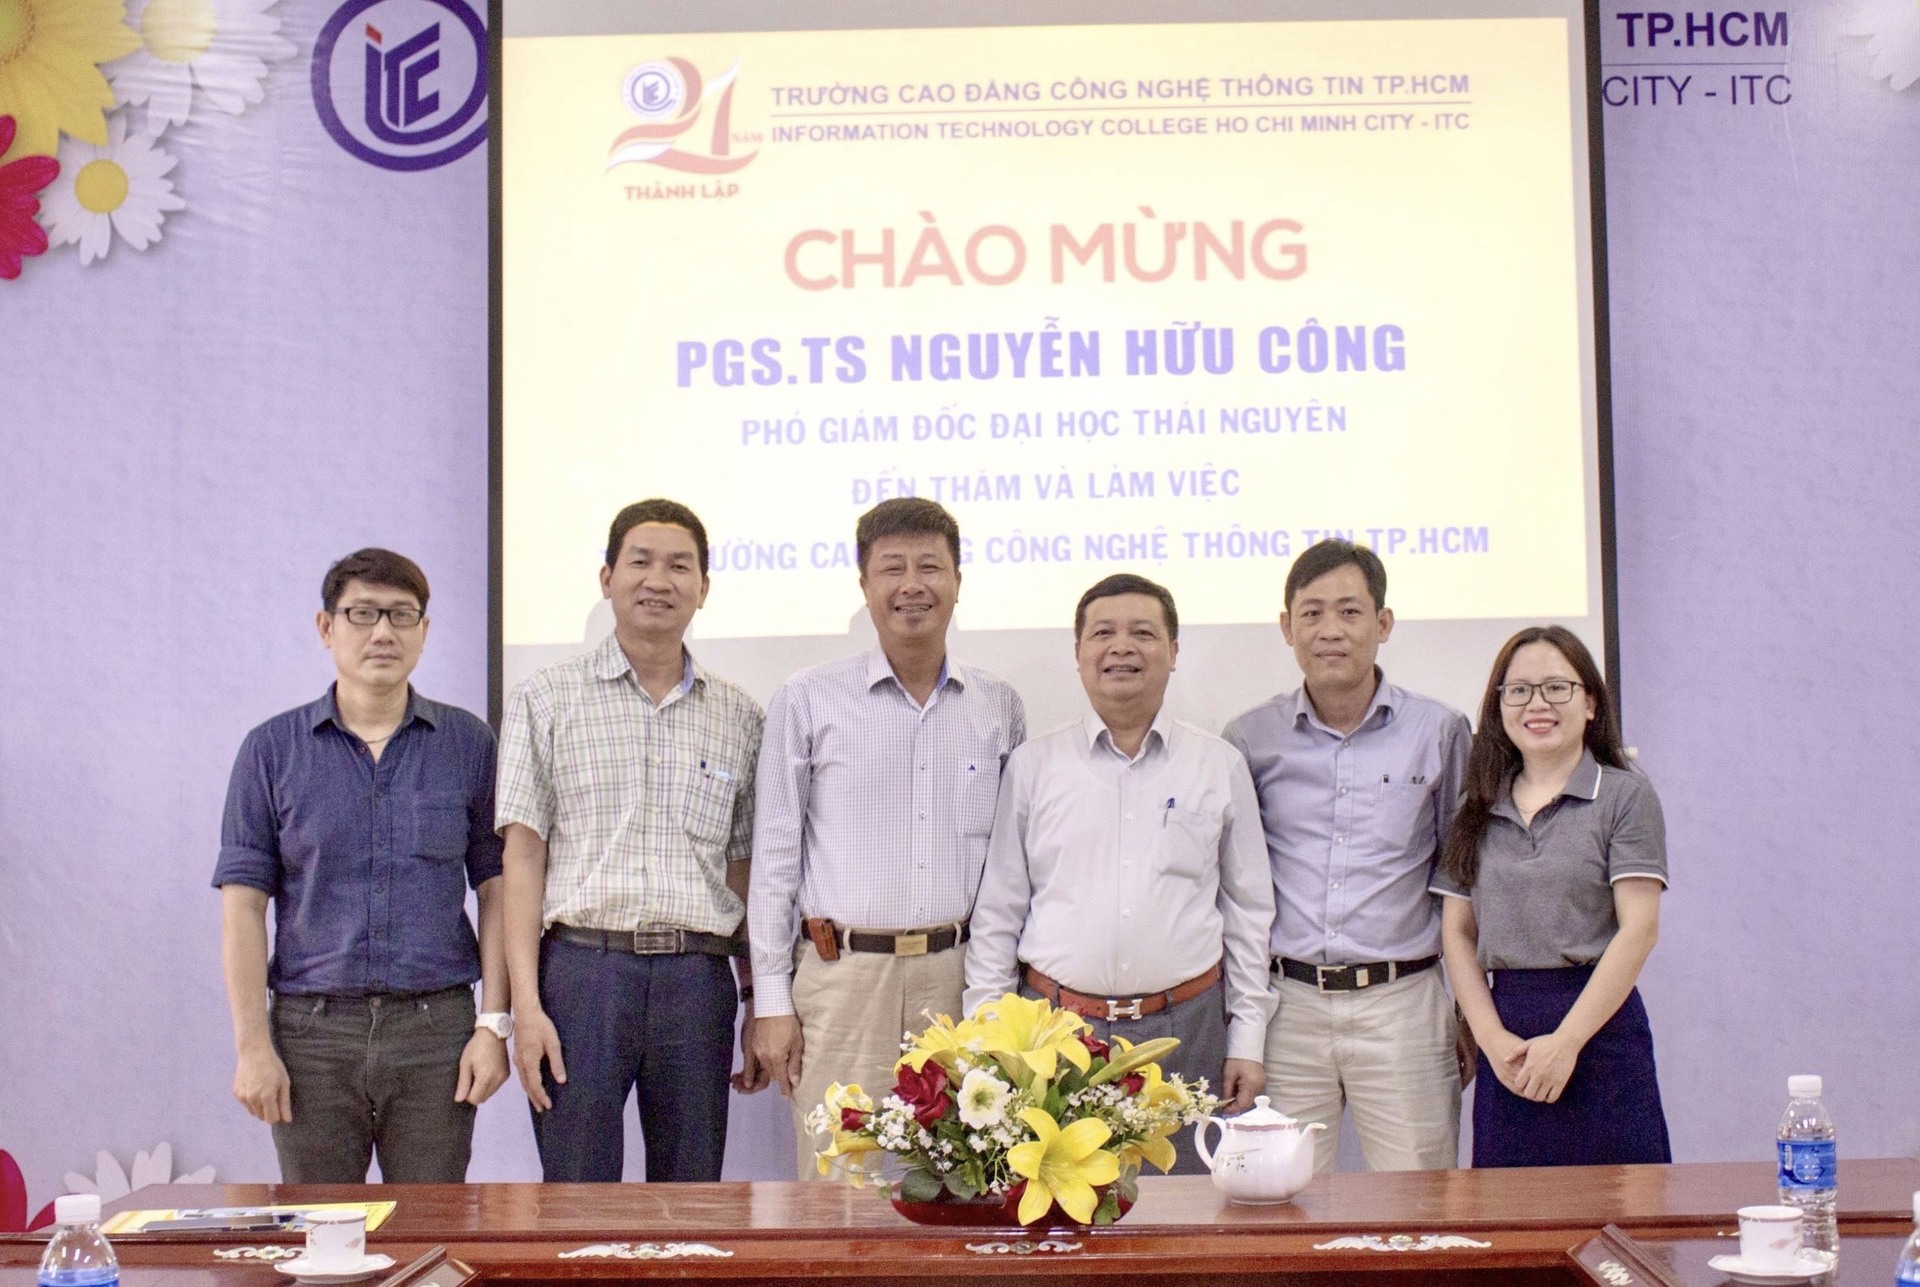 PGS.TS Nguyễn Hữu Công - Phó Giám đốc Đại học Thái Nguyên đến thăm và làm việc tại Trường ITC